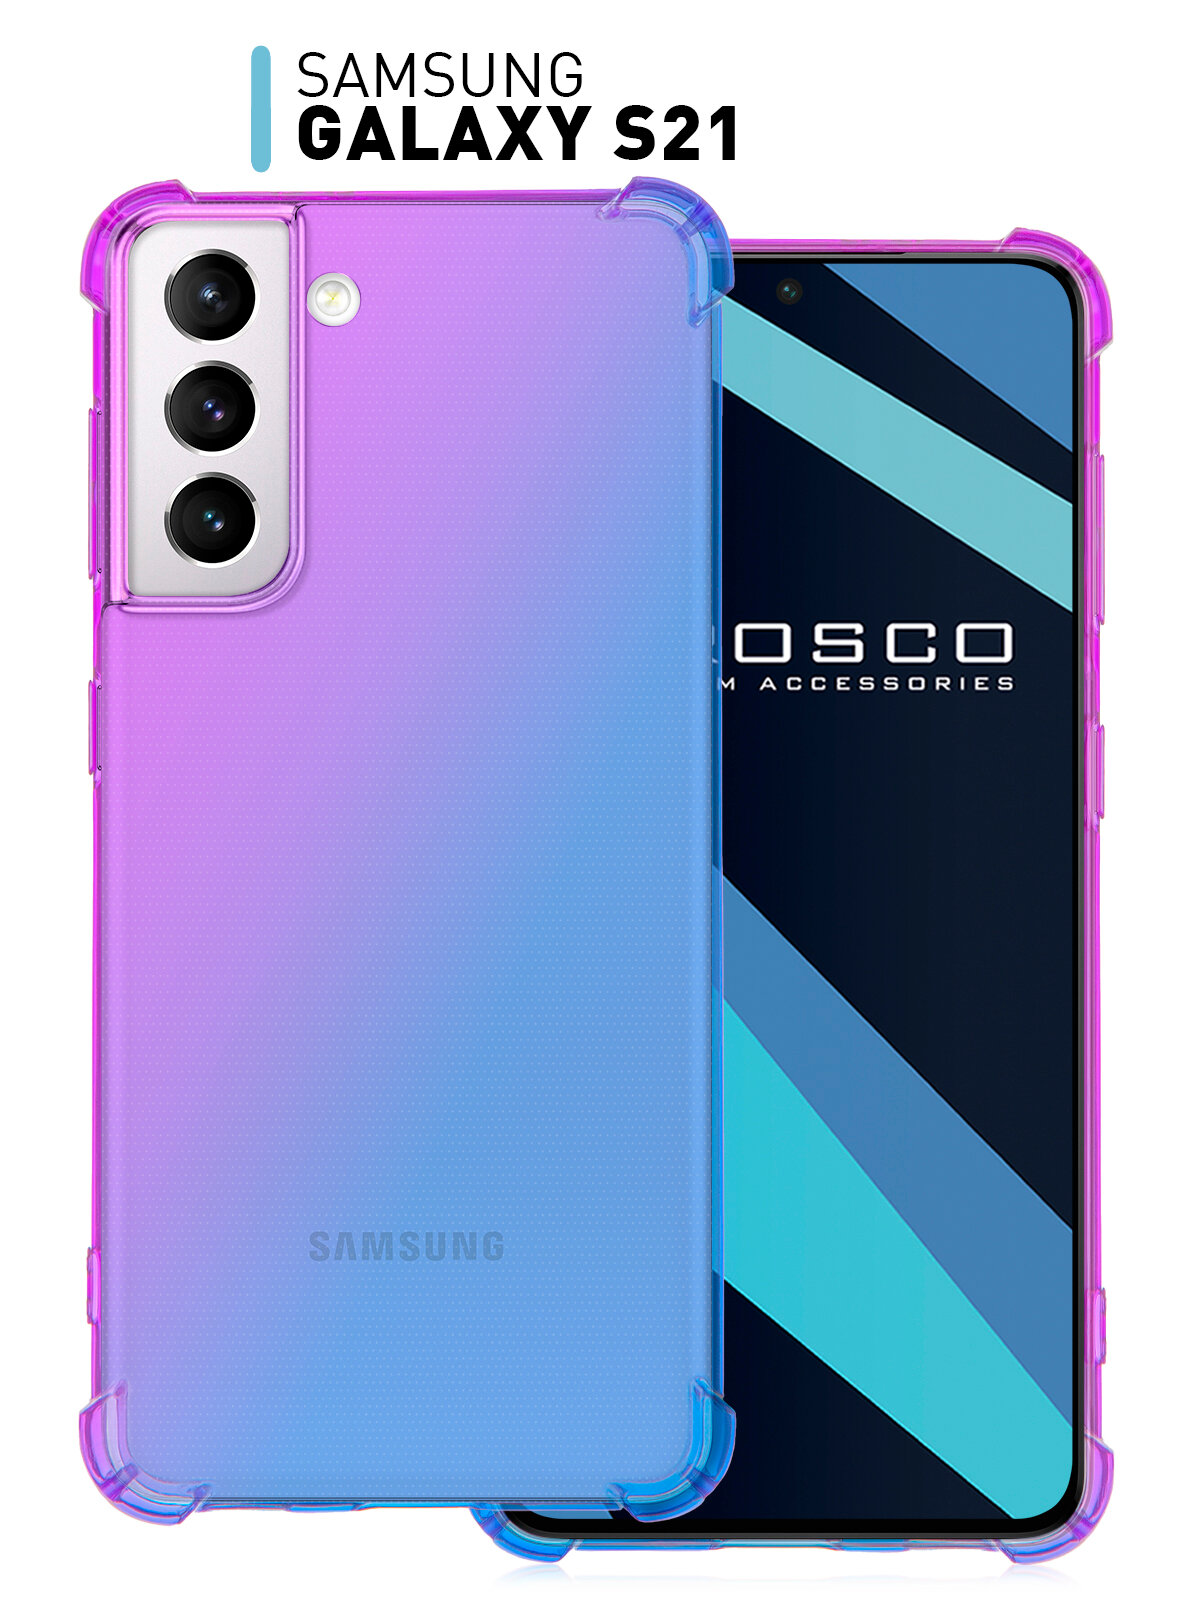 Противоударный чехол-накладка для Samsung Galaxy S21 (Самсунг Галакси С21) силиконовый, усиленный, защита камеры, прозрачный фиолетовый синий ROSCO